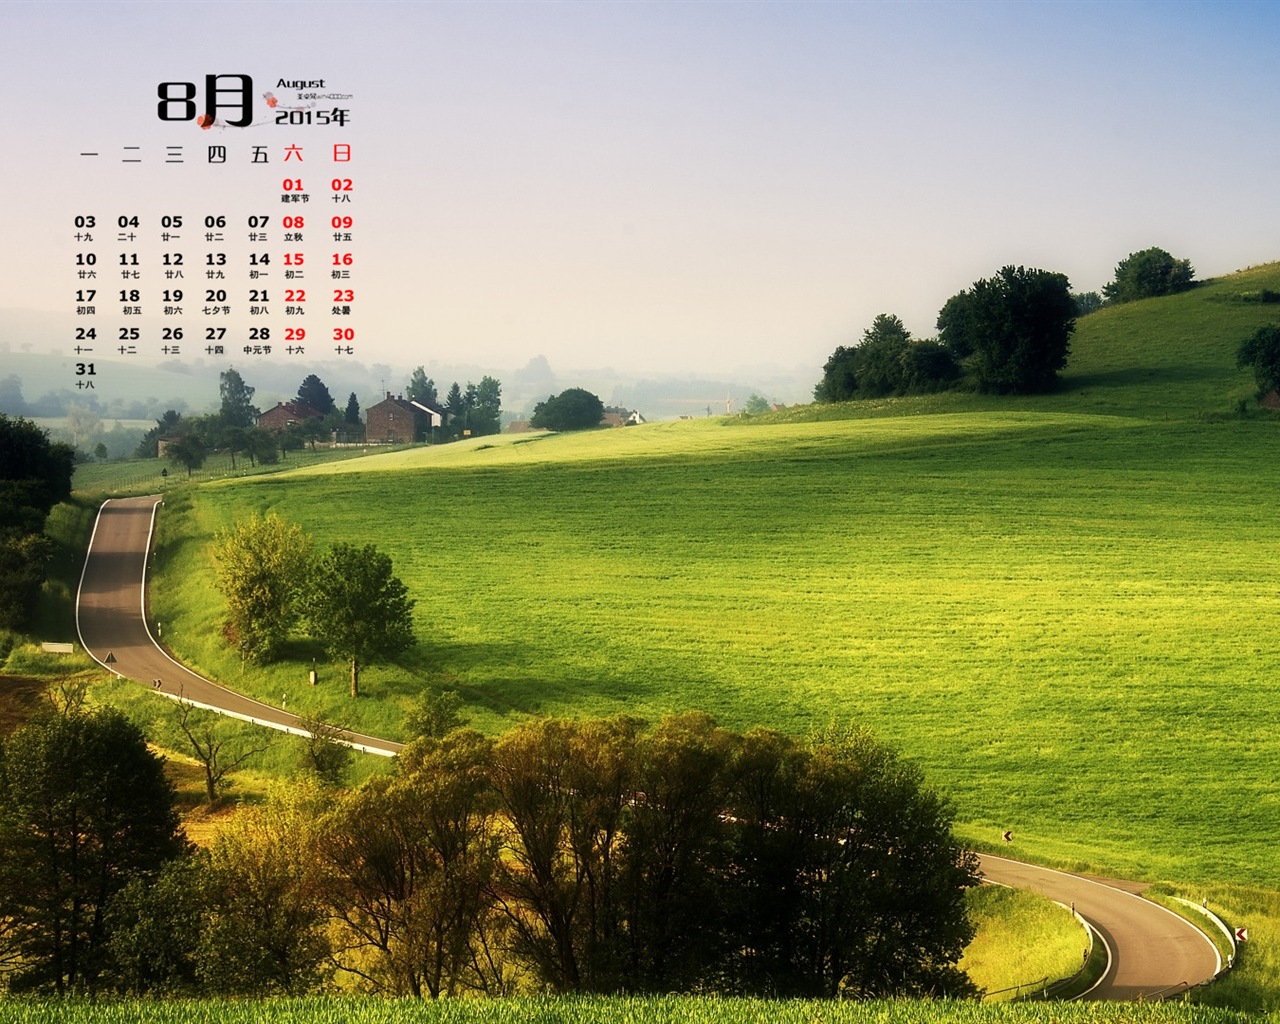 08. 2015 kalendář tapety (1) #1 - 1280x1024